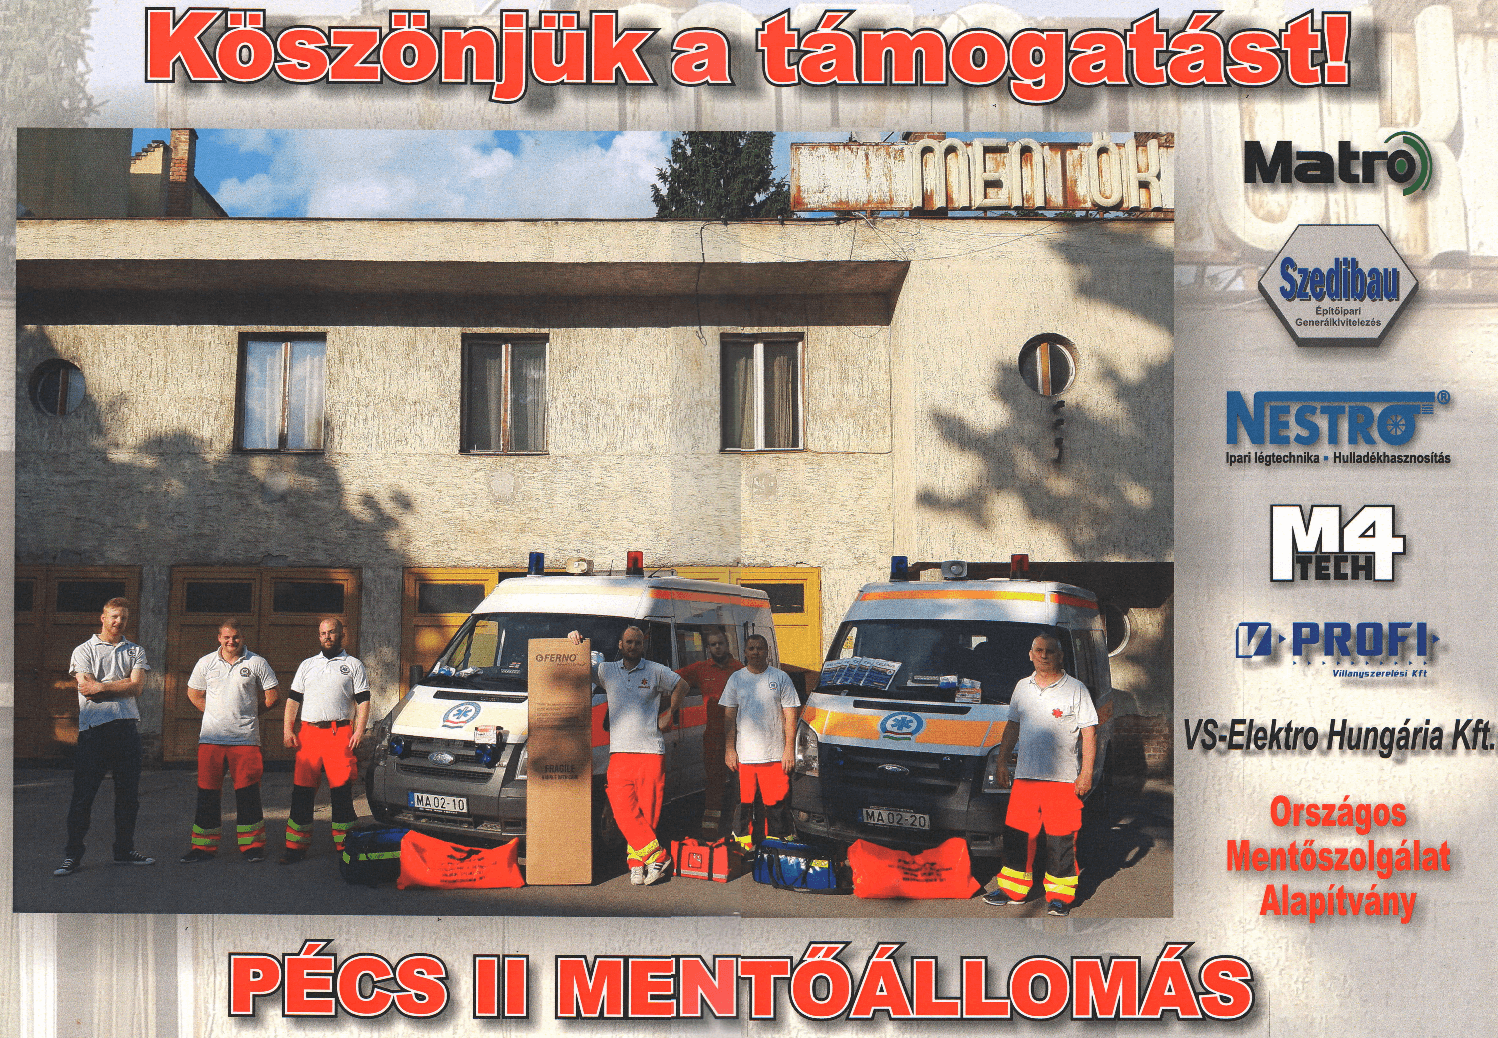 Nestro Hungaria Kft is tamogatta a Pécs II mentőállomást